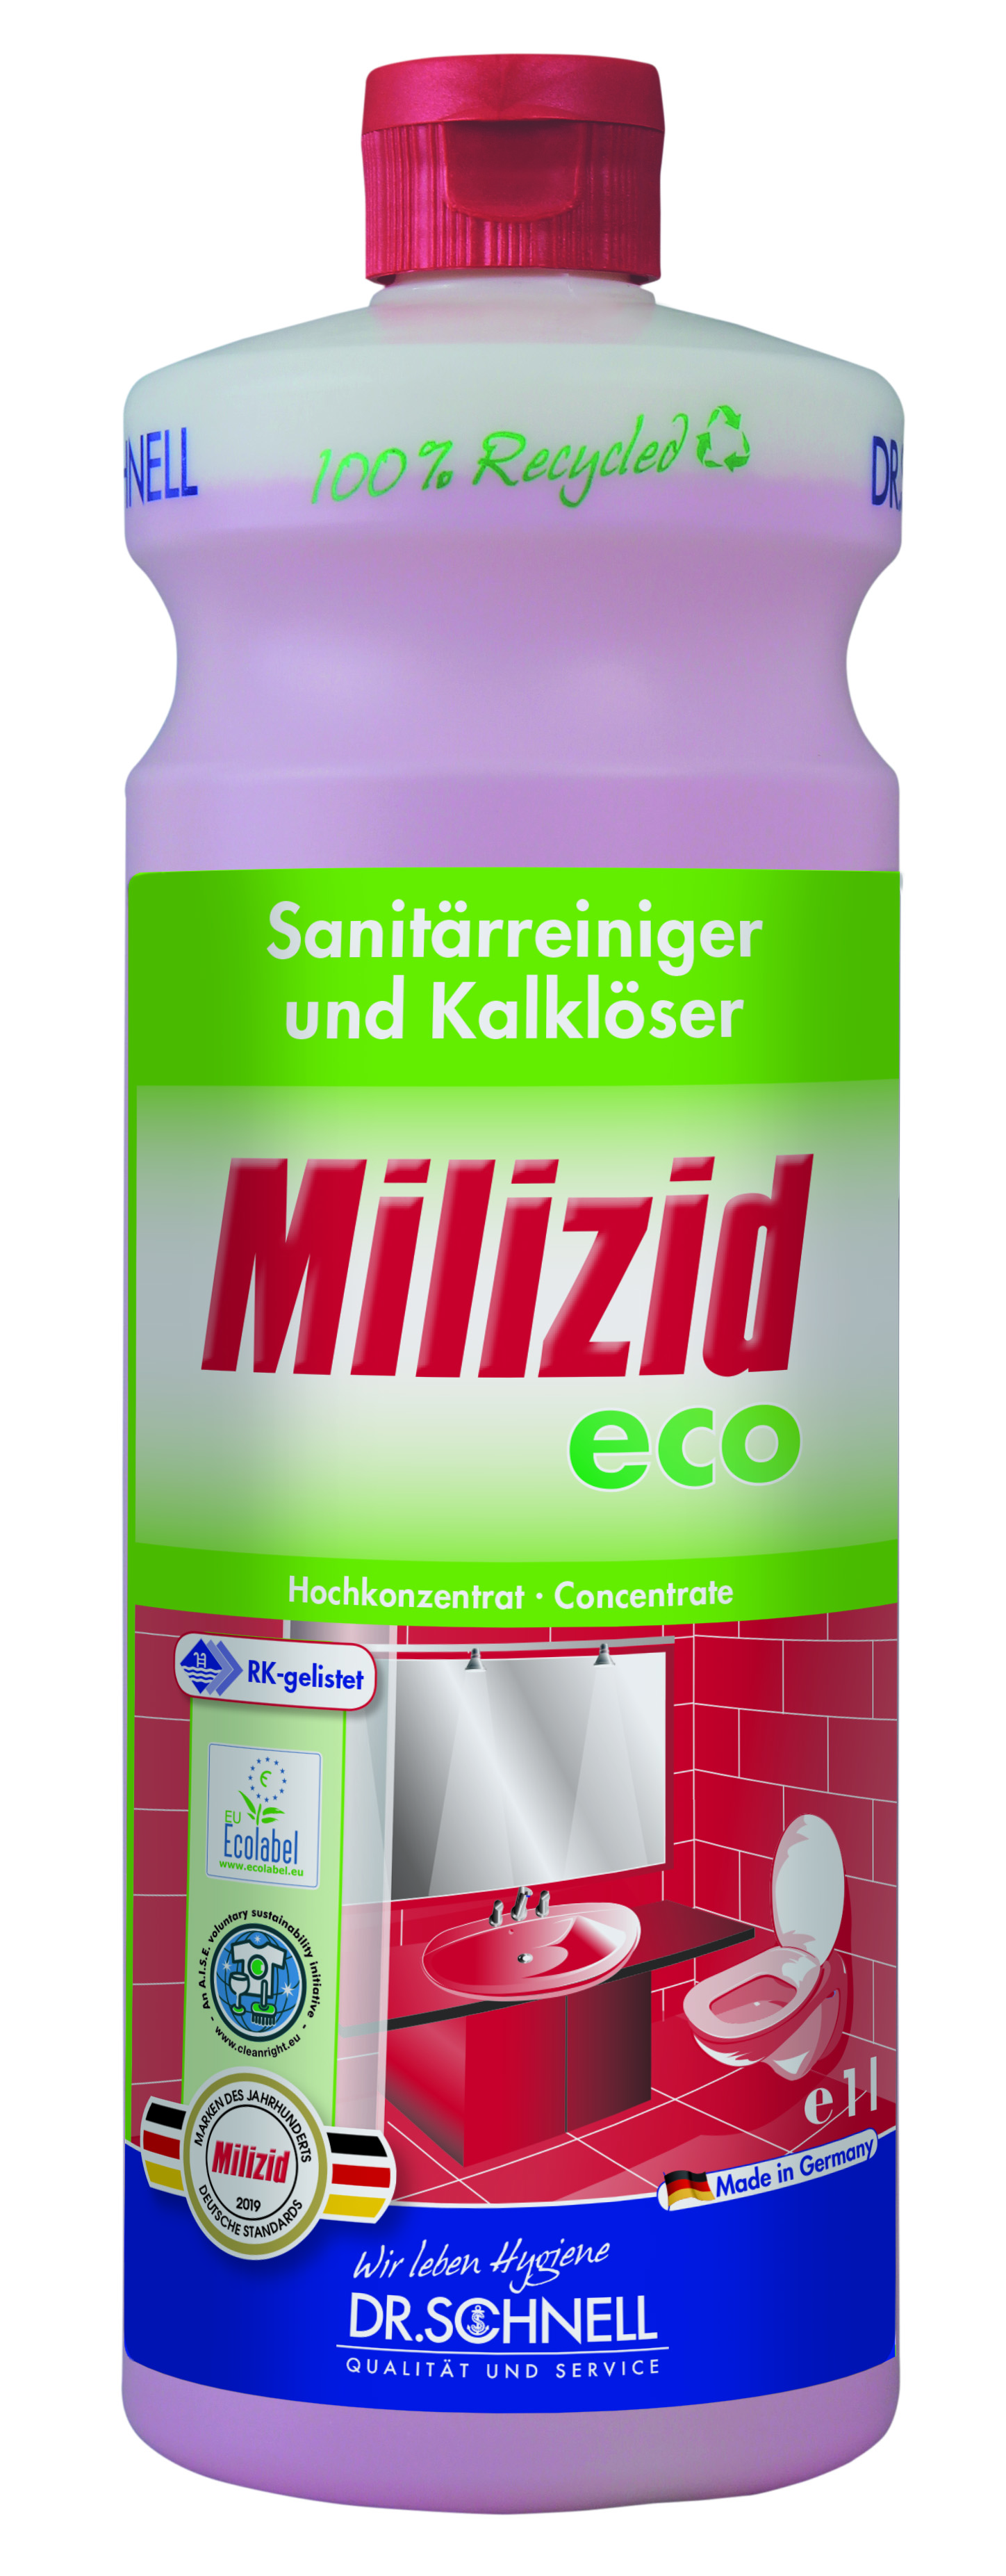 Dr. Schnell Milizid eco Sanitärreiniger 1 l